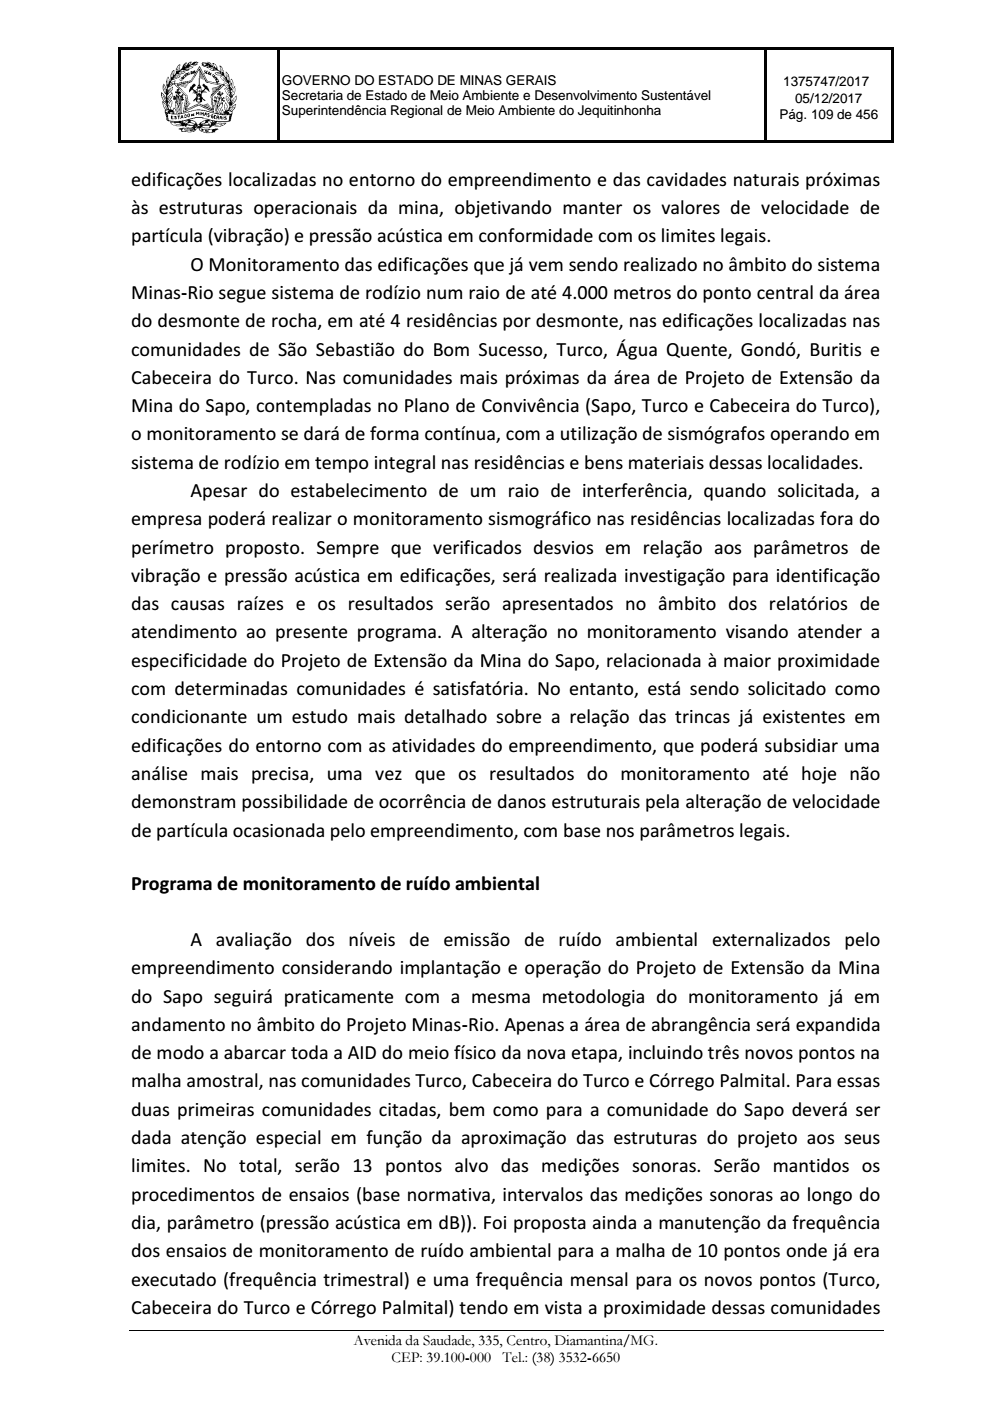 Page 109 from Parecer único da Secretaria de estado de Meio Ambiente e Desenvolvimento Sustentável (SEMAD)